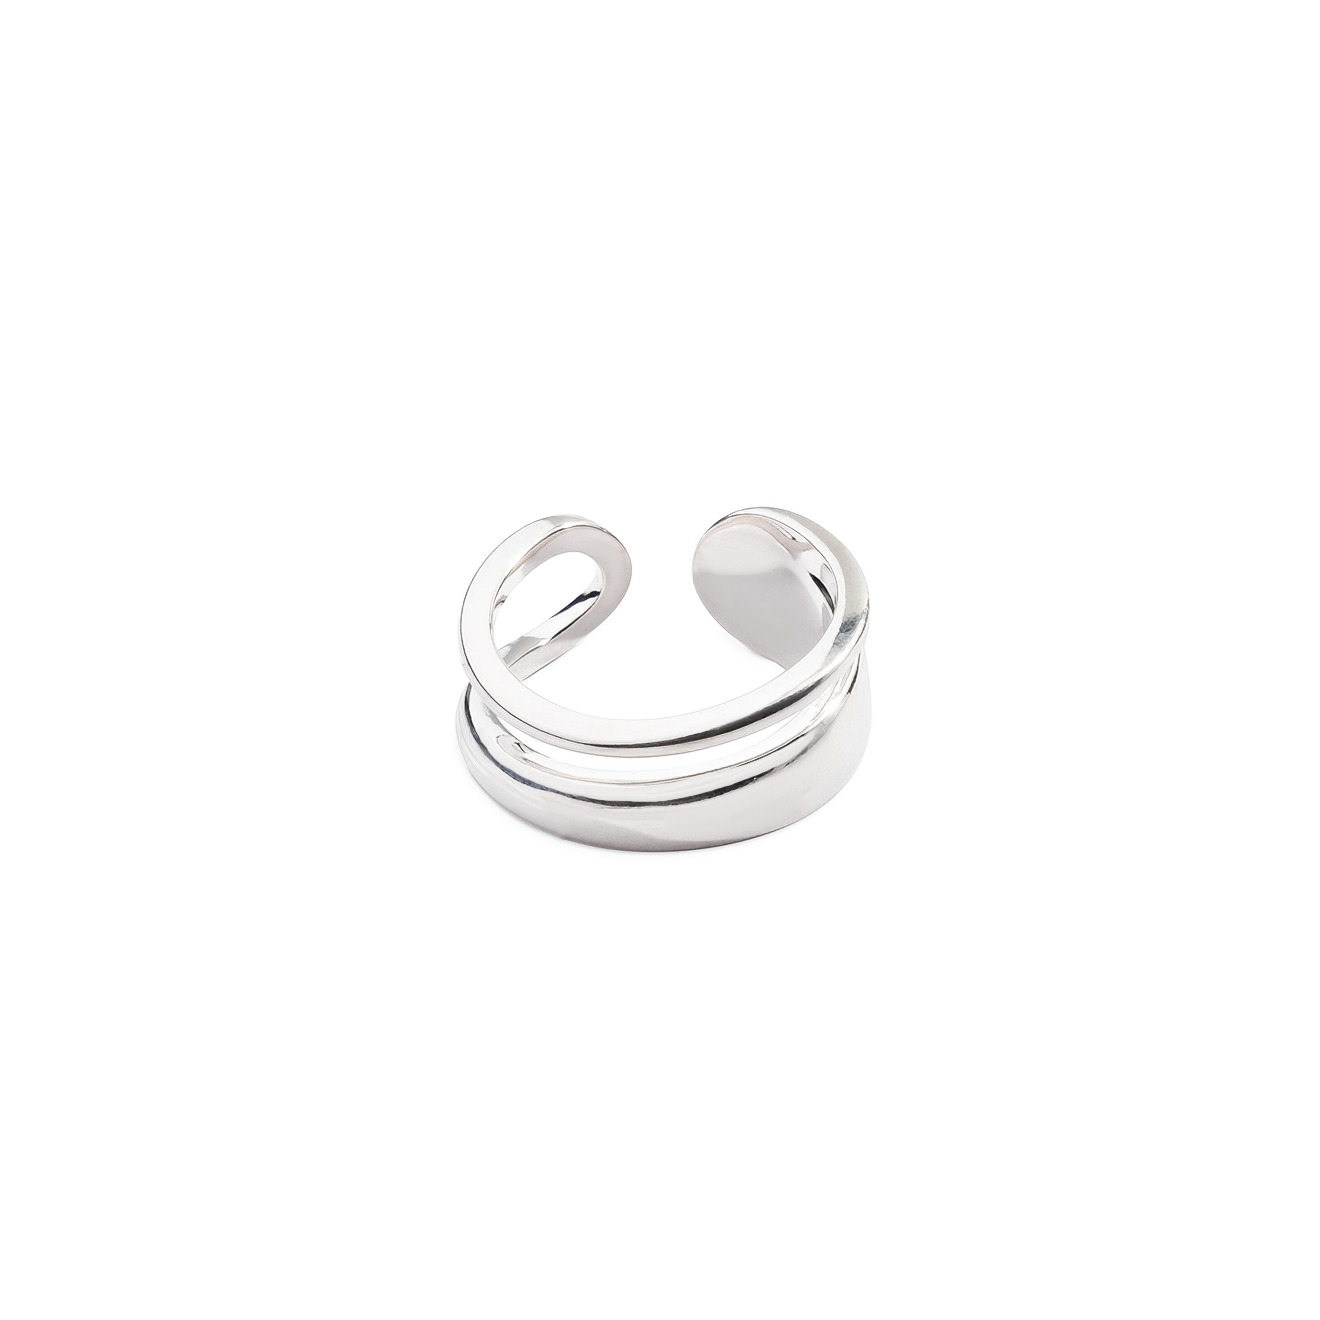 Philippe Audibert Незамкнутое двойное кольцо, покрытое серебром philippe audibert покрытое серебром колье wilna с шариками